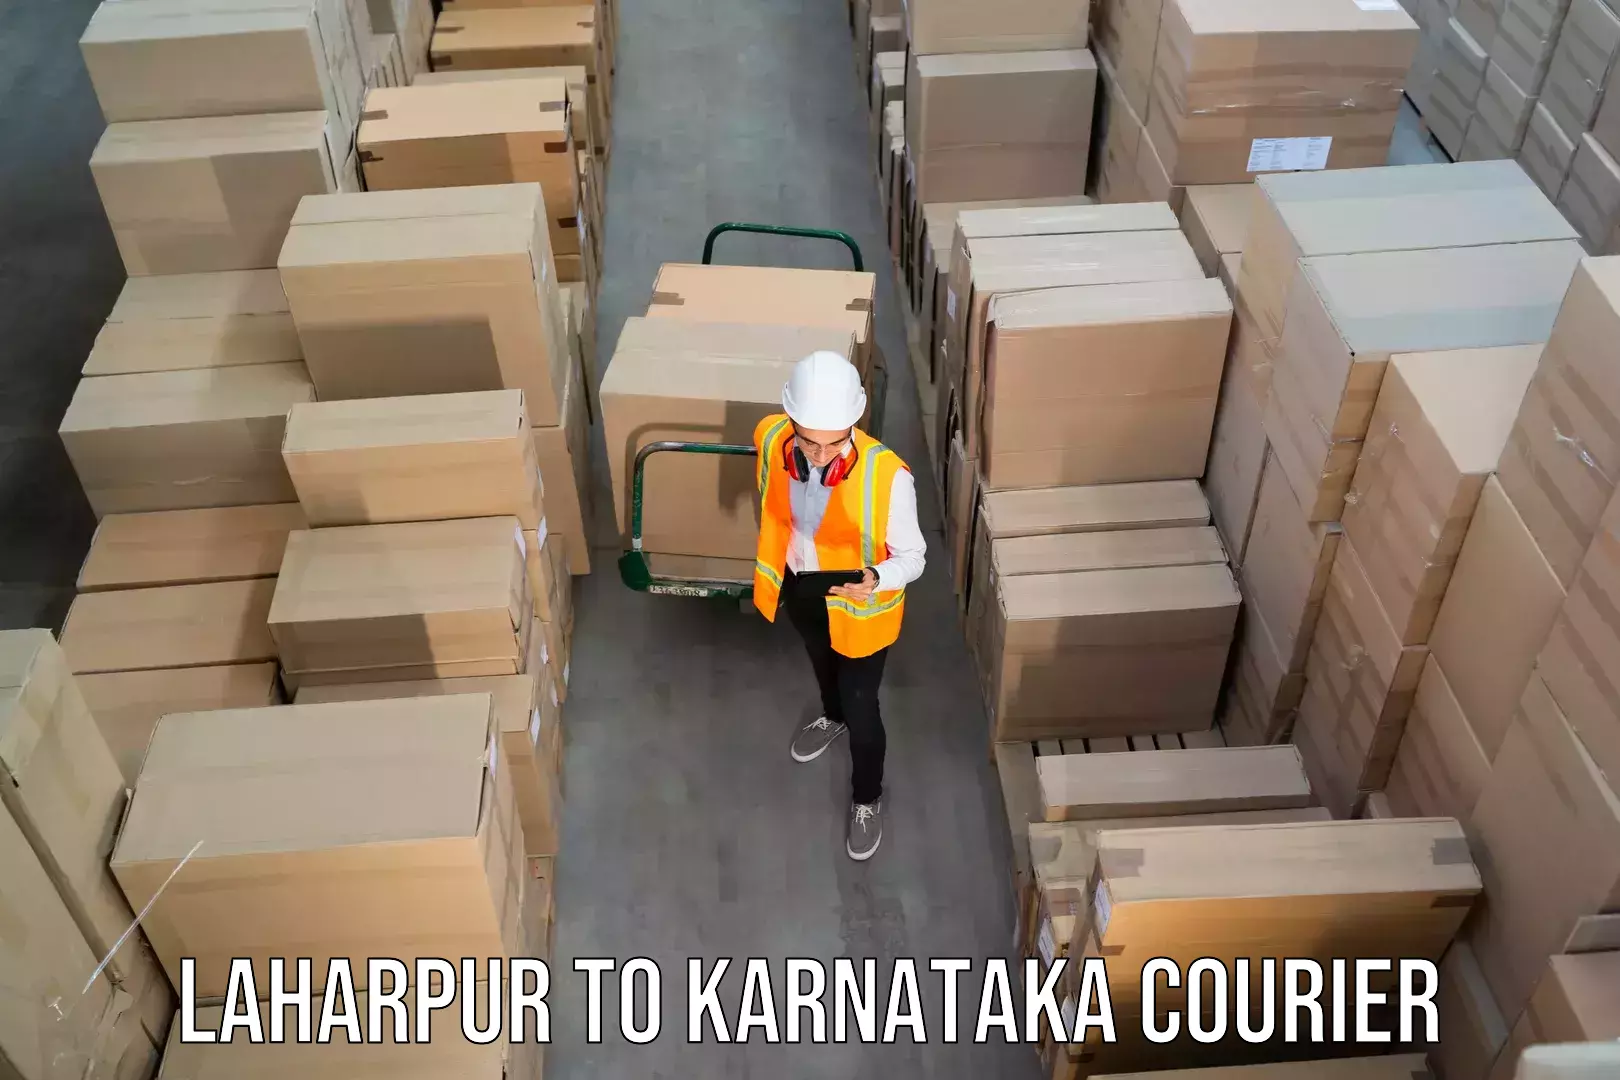 Reliable shipping partners Laharpur to Karnataka